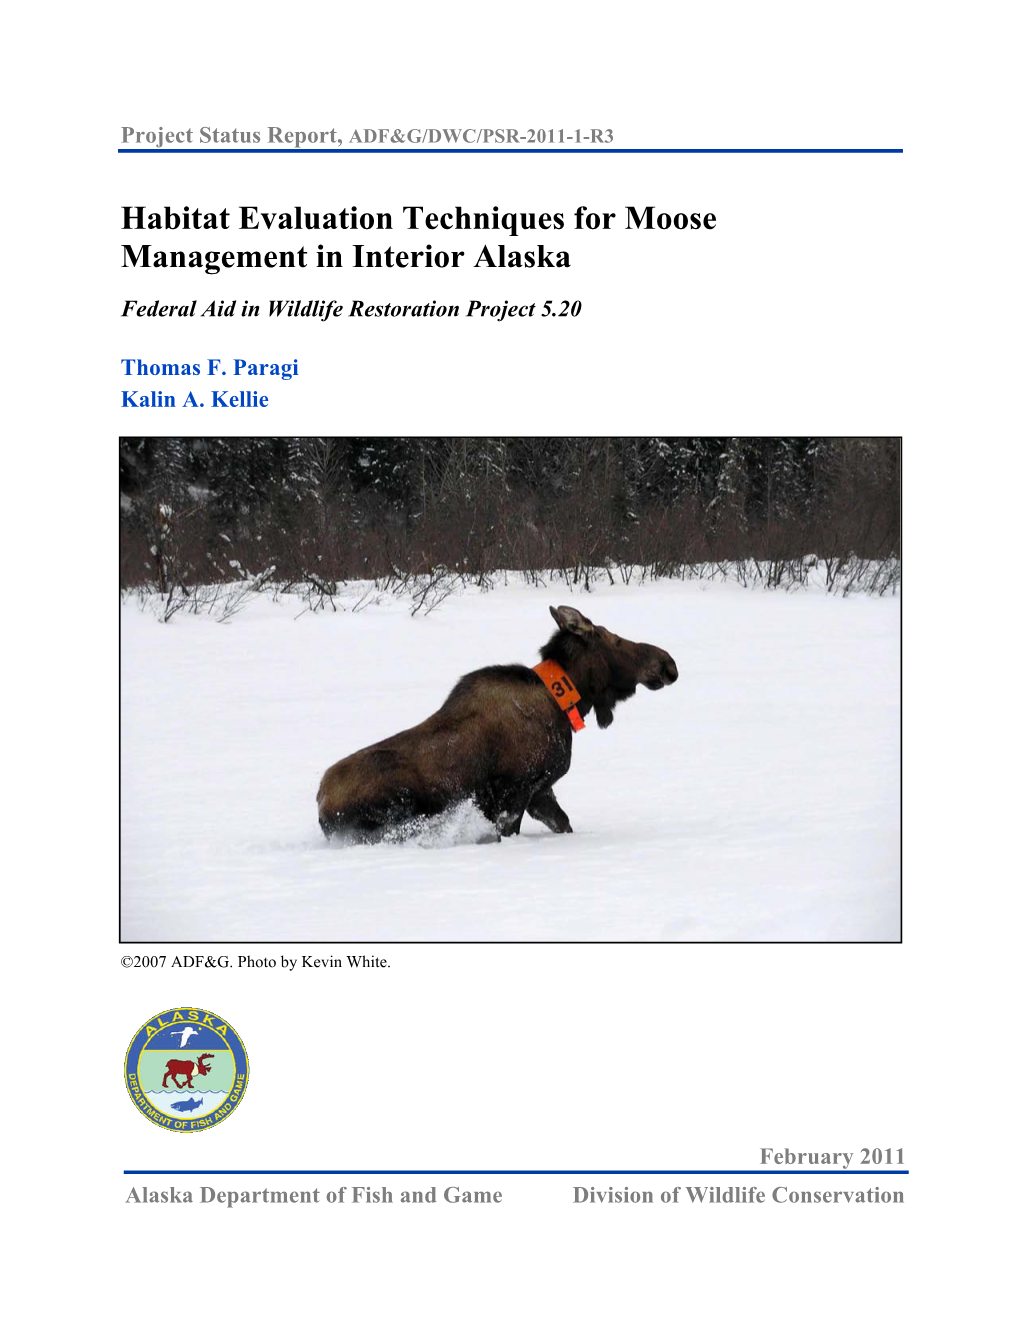 Habitat Evaluation Techniques for Moose Management in Interior Alaska